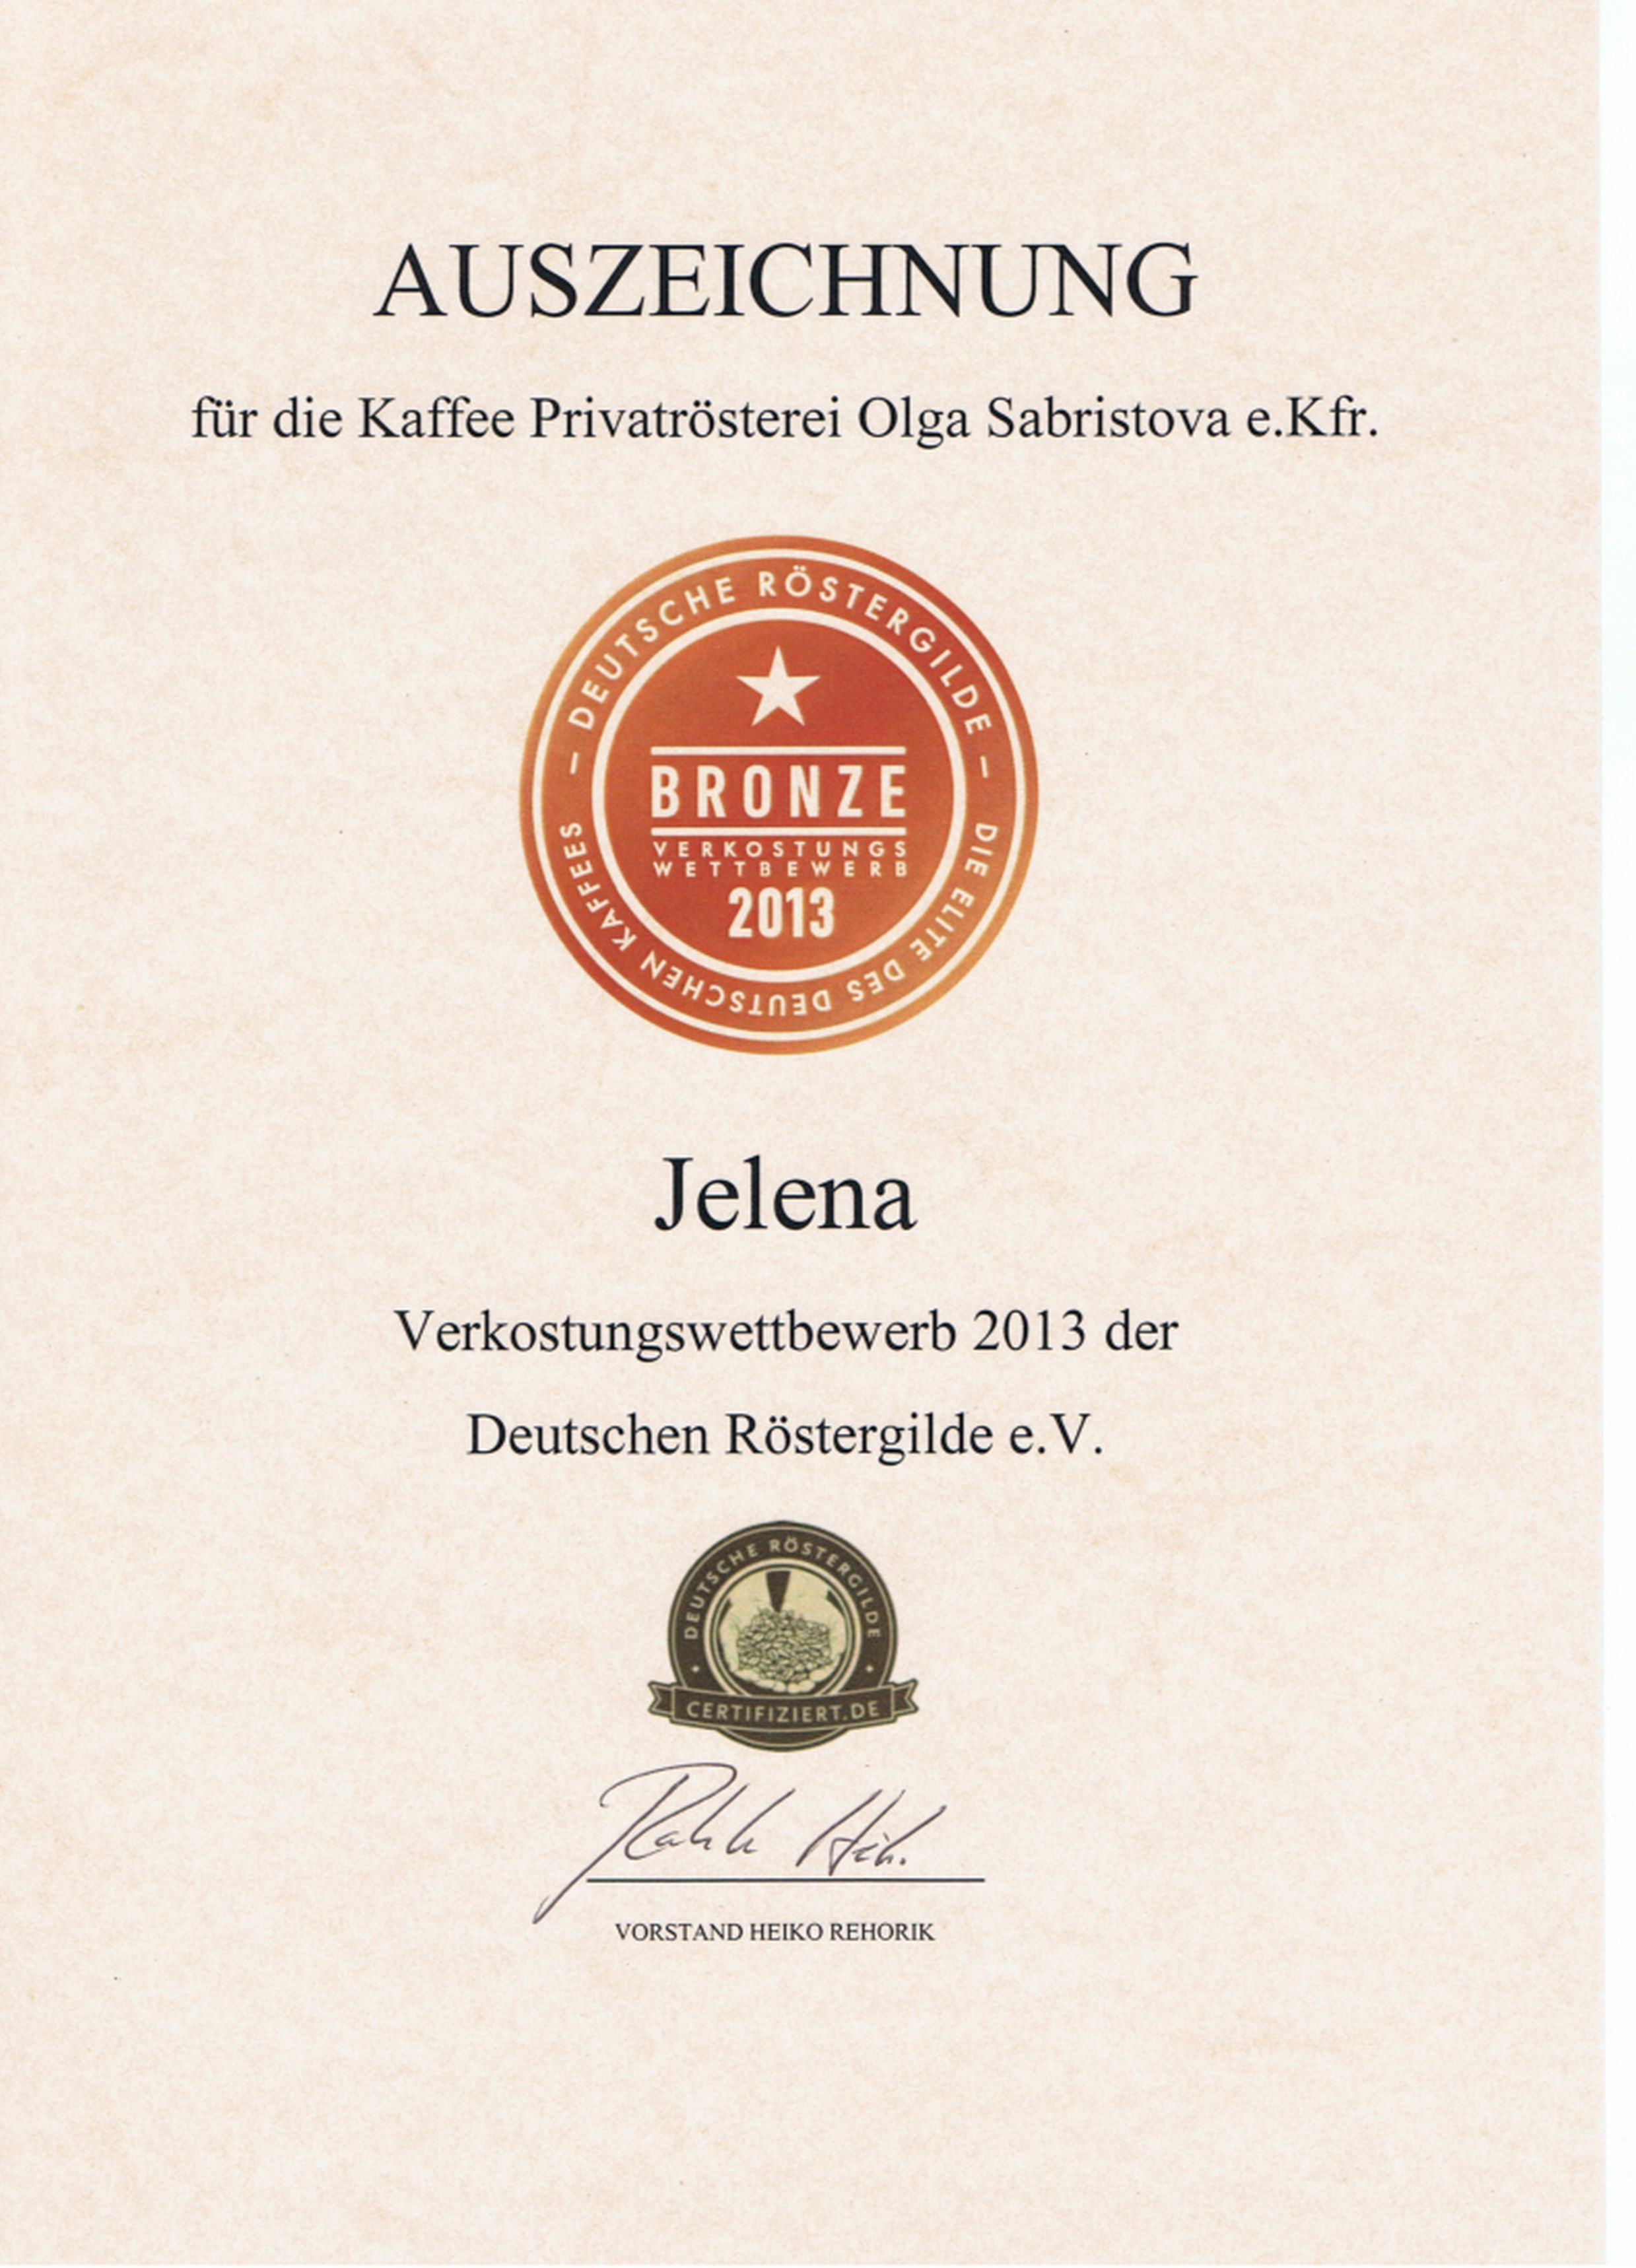 Bronzemedaille für Espresso Jelena beim Verkostungswettbewerb 2013